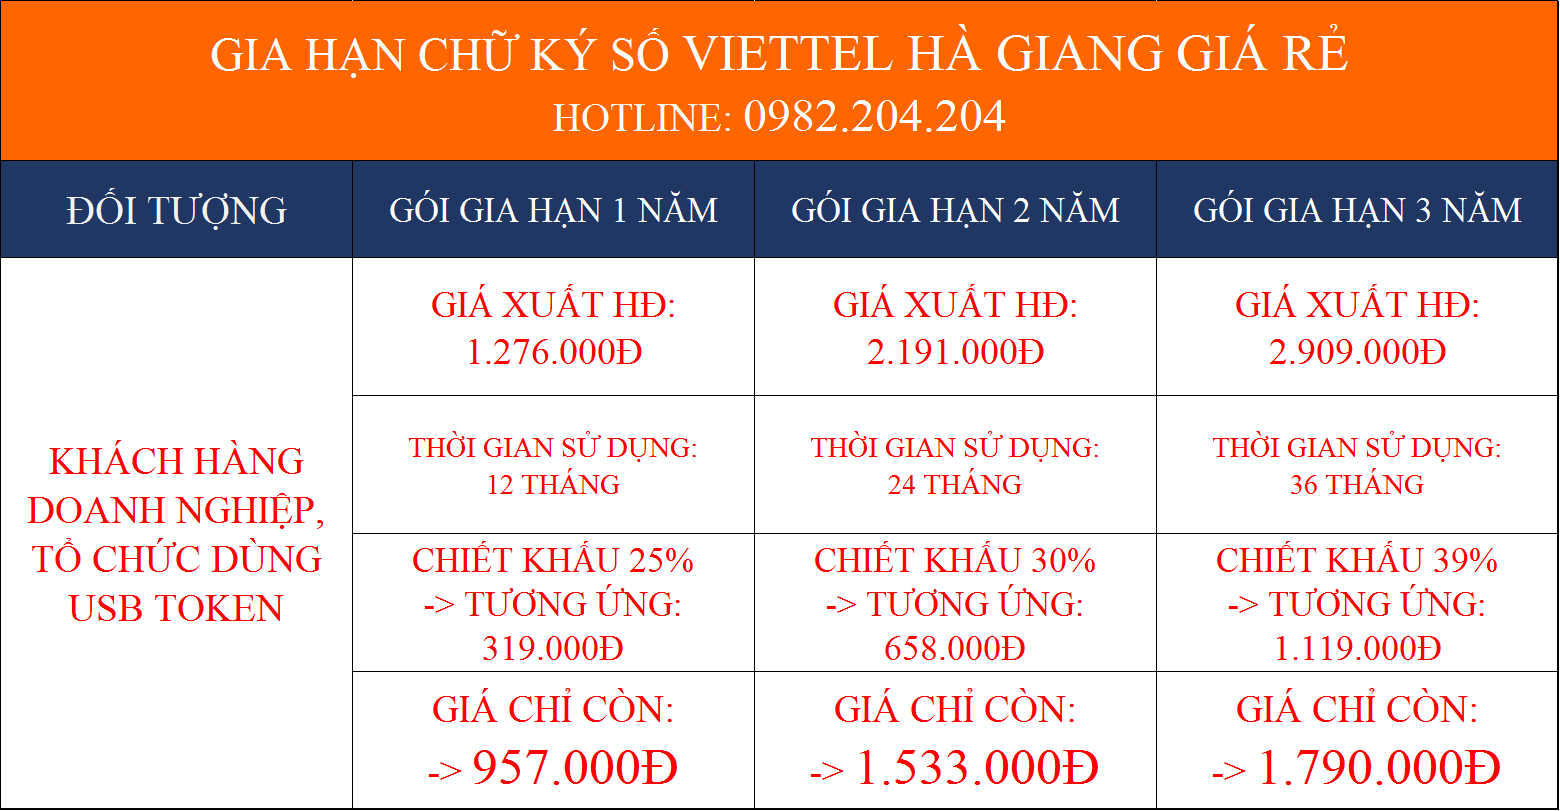 Dịch vụ gia hạn chữ ký số Viettel Hà Giang giá rẻ